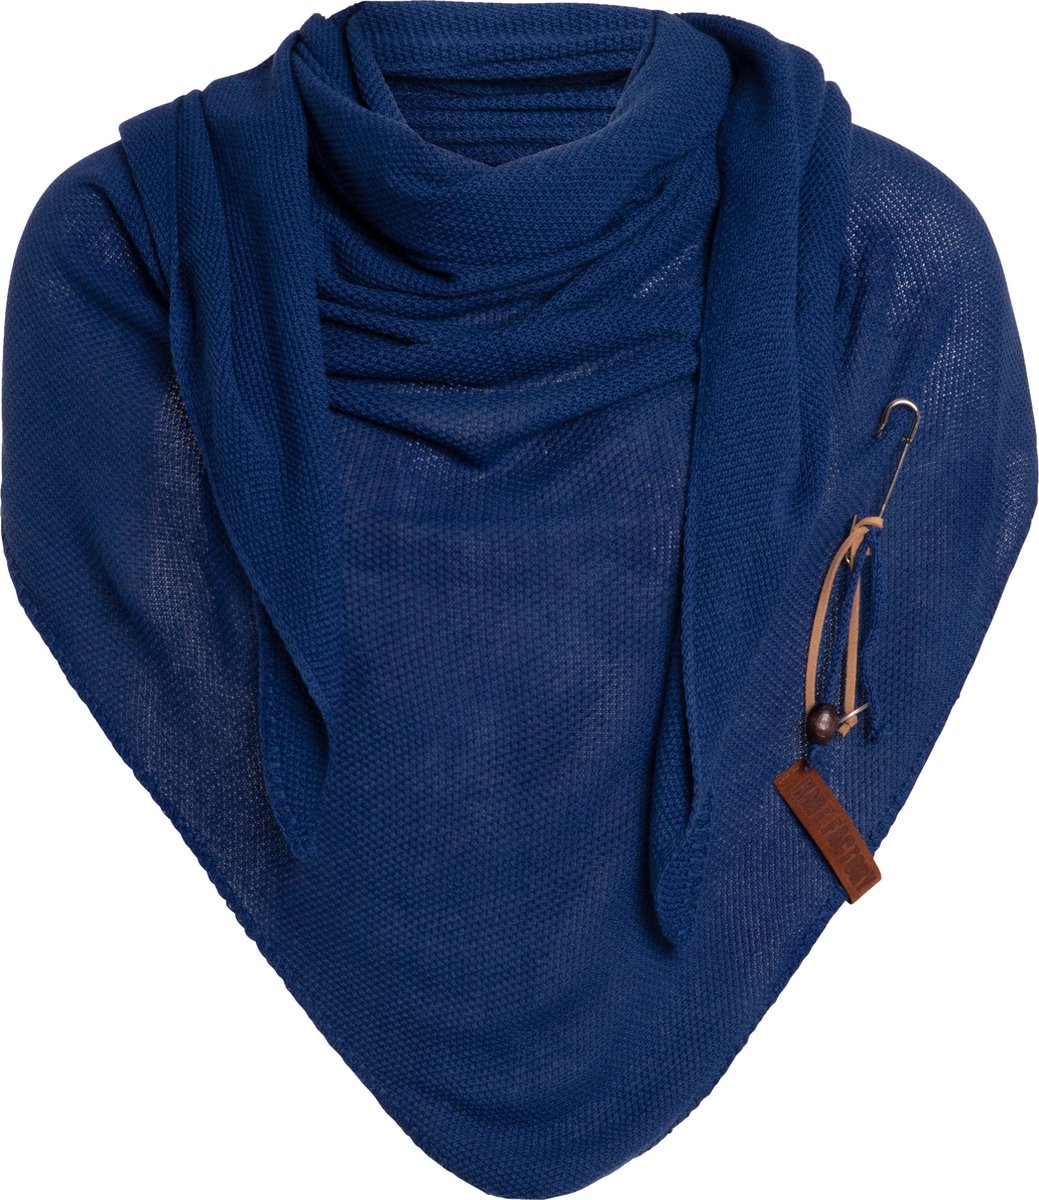 Knit Factory Lola Gebreide Omslagdoek - Driehoek Sjaal Dames - Katoenen sjaal - Luchtige Sjaal voor de lente, zomer en herfst - Stola - Kings Blue - 190x85 cm - Inclusief sierspeld